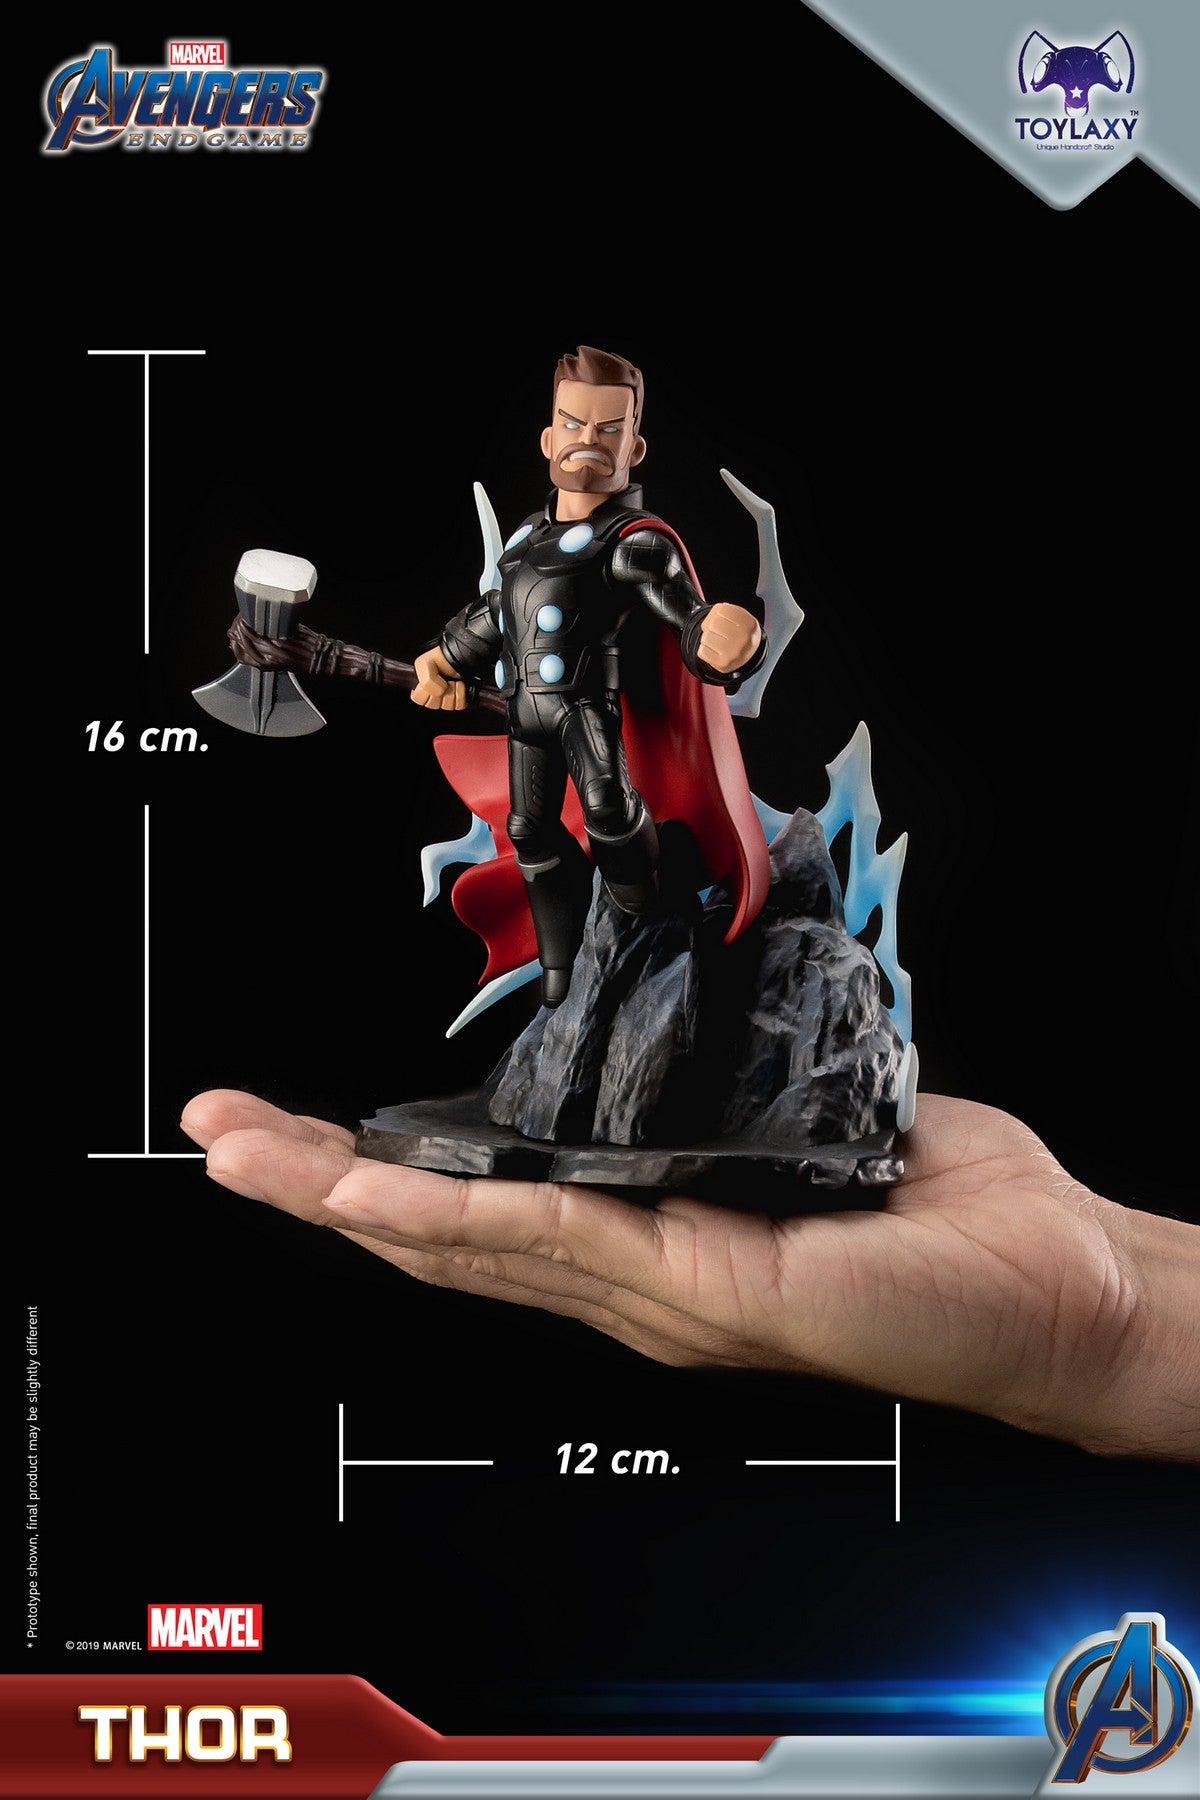 漫威復仇者聯盟：雷神索爾正版模型手辦人偶玩具 Marvel's Avengers: Endgame Premium PVC Thor official figure toy 1 thor doll size